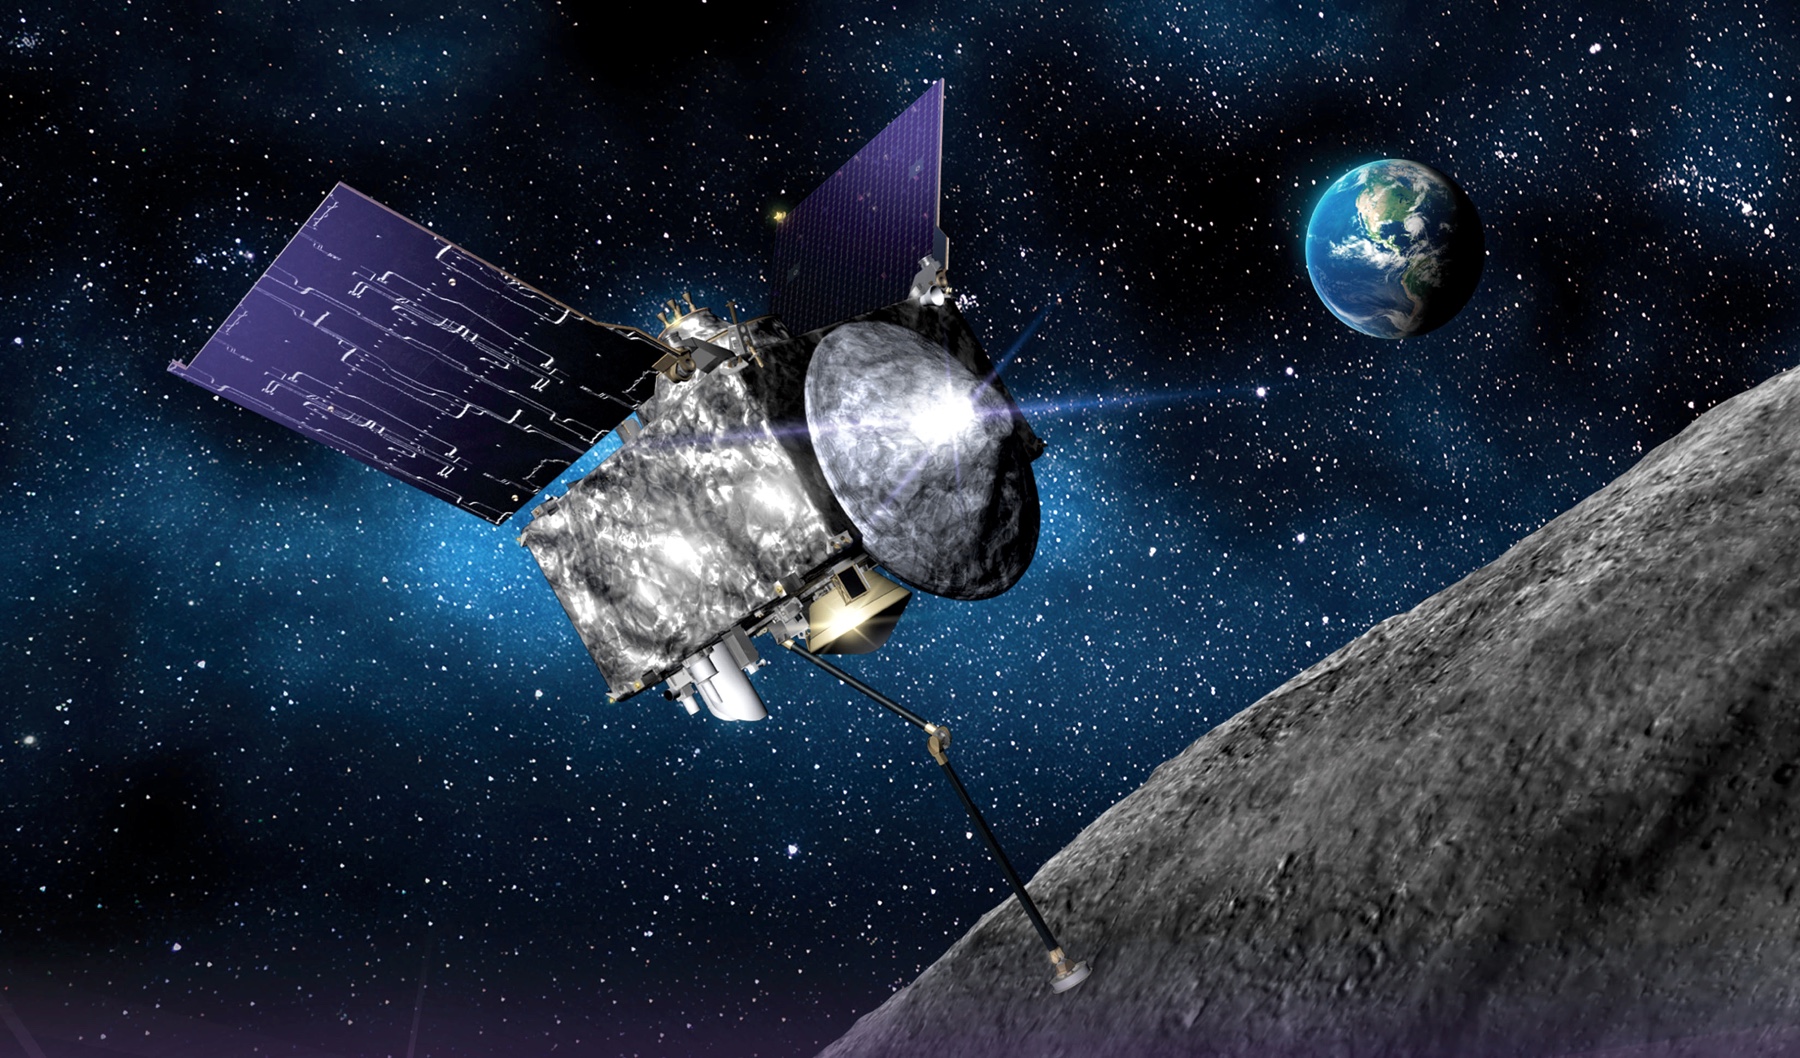 La surface de l'astéroïde sur lequel la sonde OSIRIS-REx de la NASA a atterri ressemblait à une "fosse de boules de plastique"